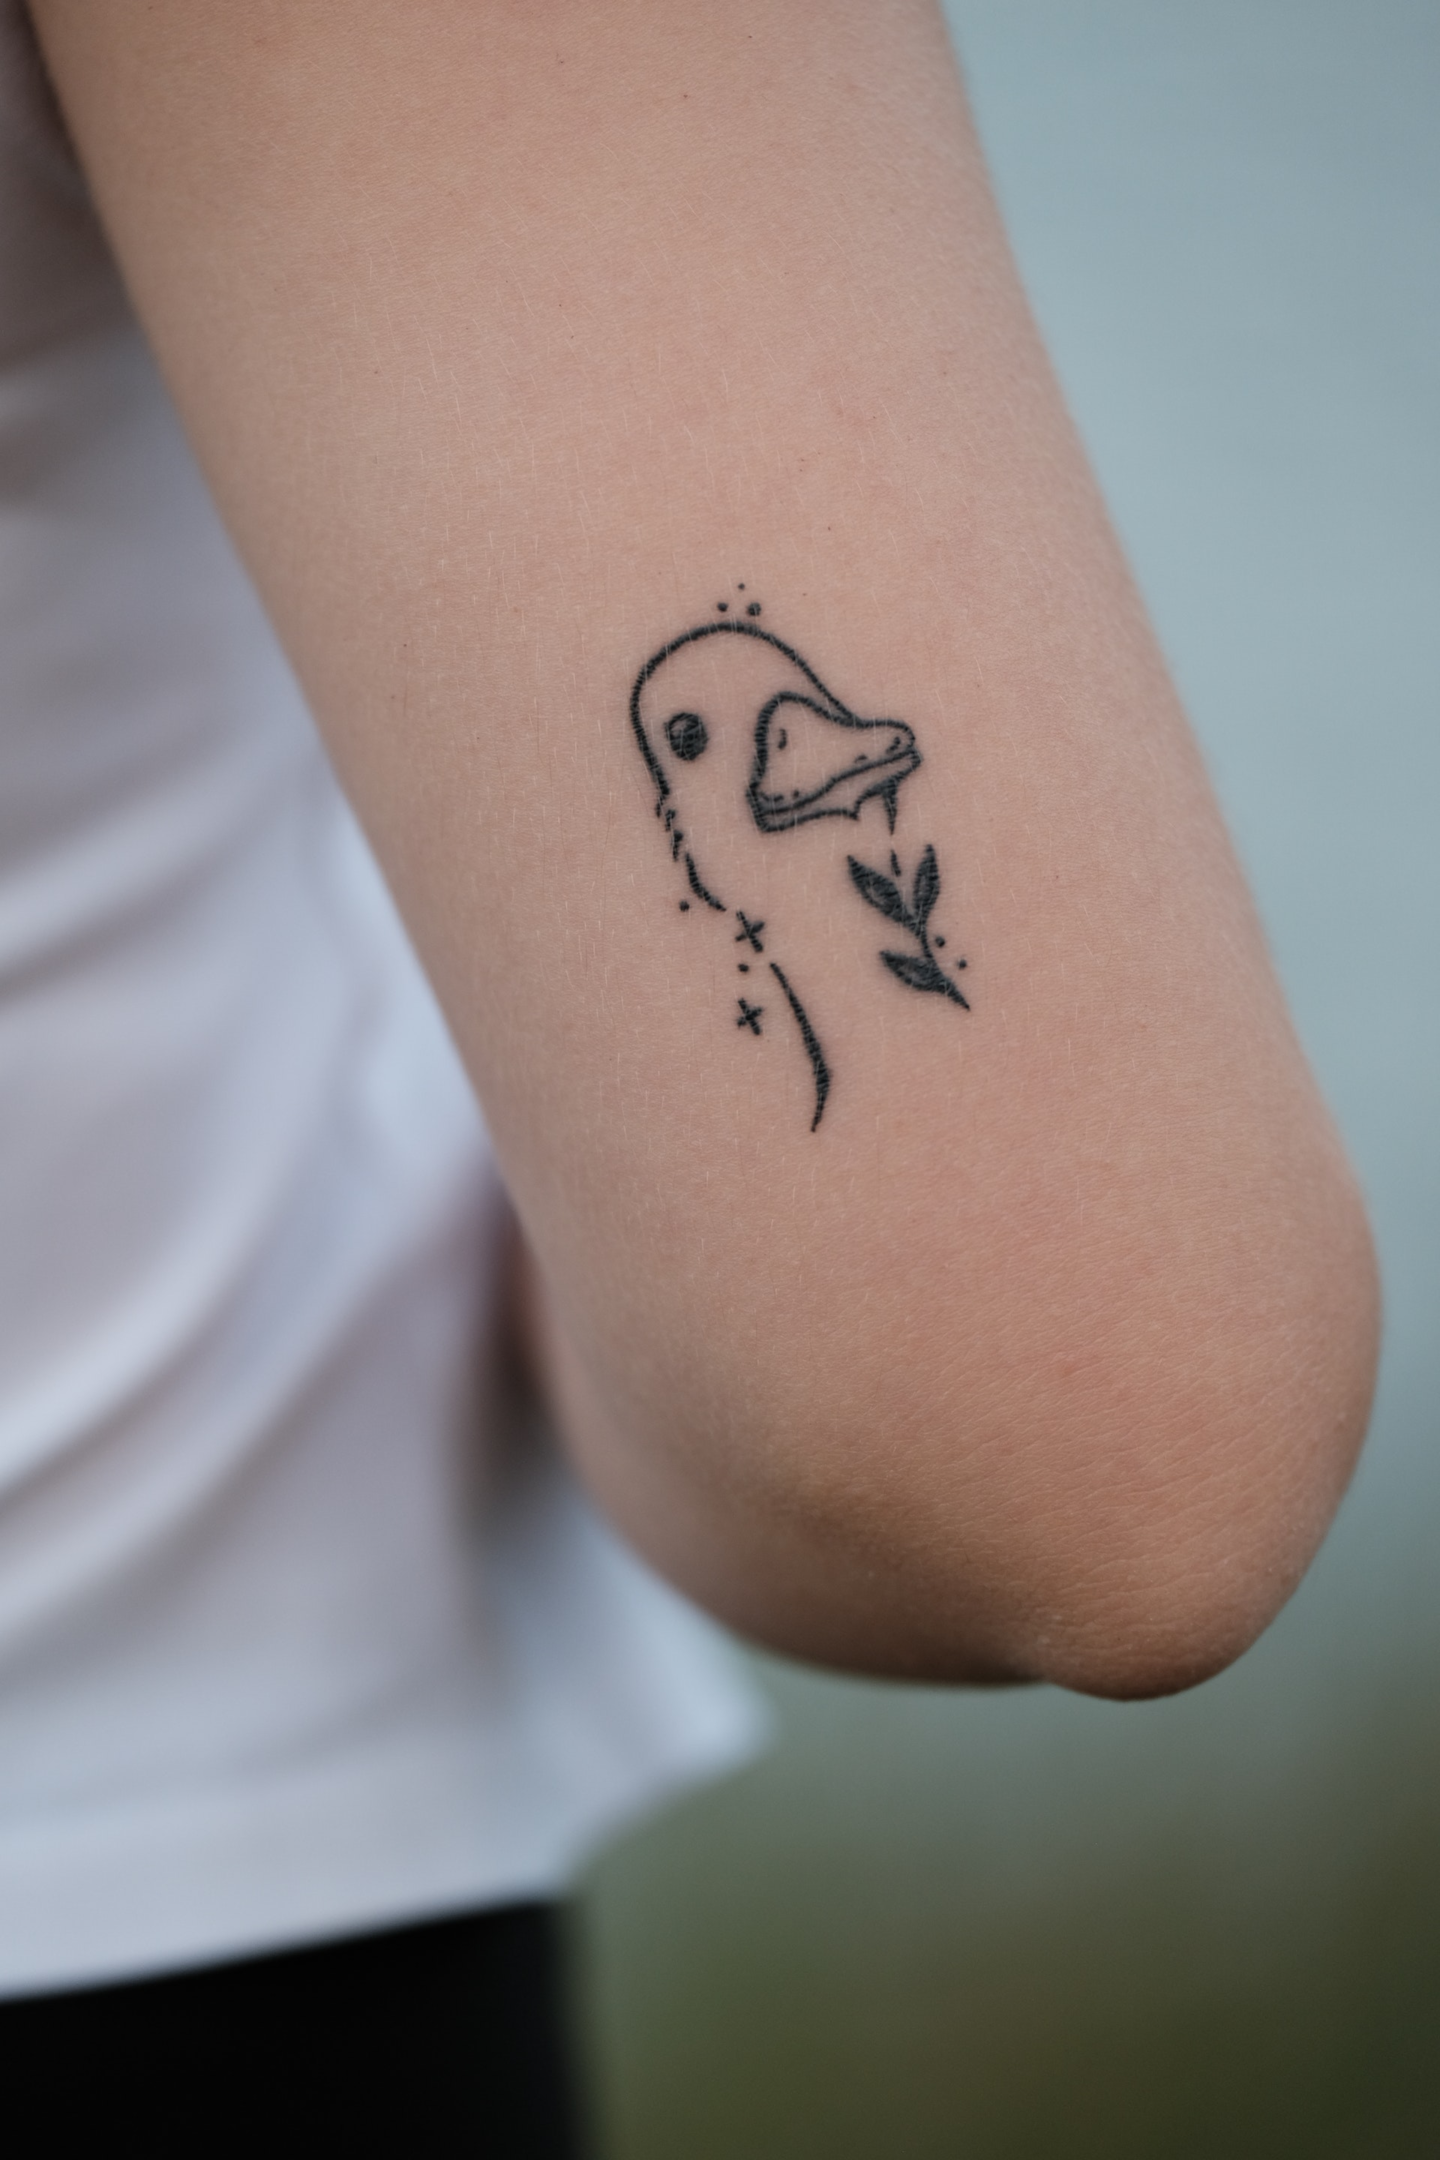 A Tattoo of a Bird